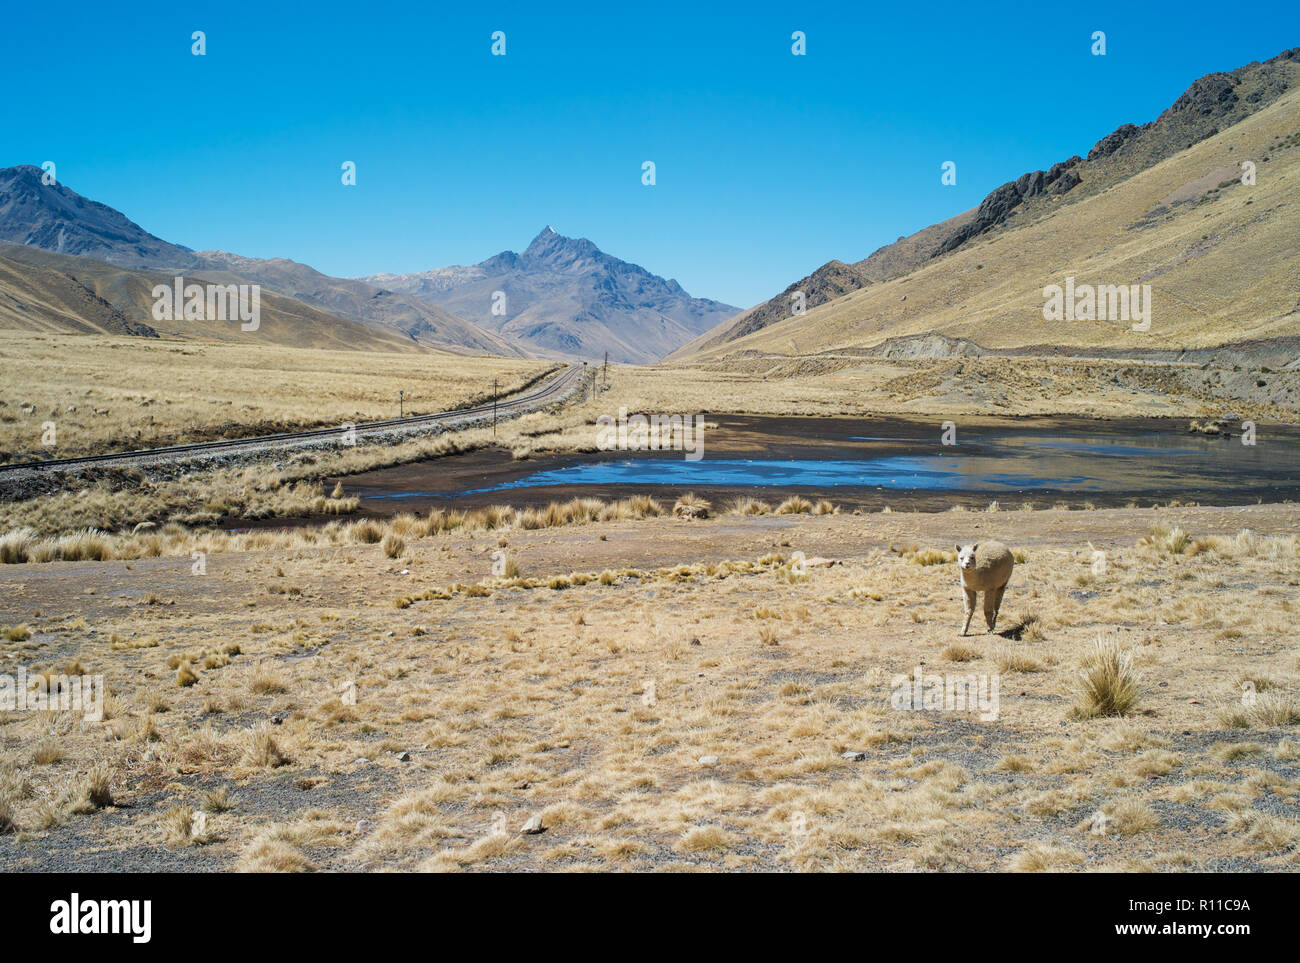 Lonely Eisenbahnschienen in den Anden von Peru und ein Lama, schöne Landschaft mit goldenen Gras und einem Teich Stockfoto